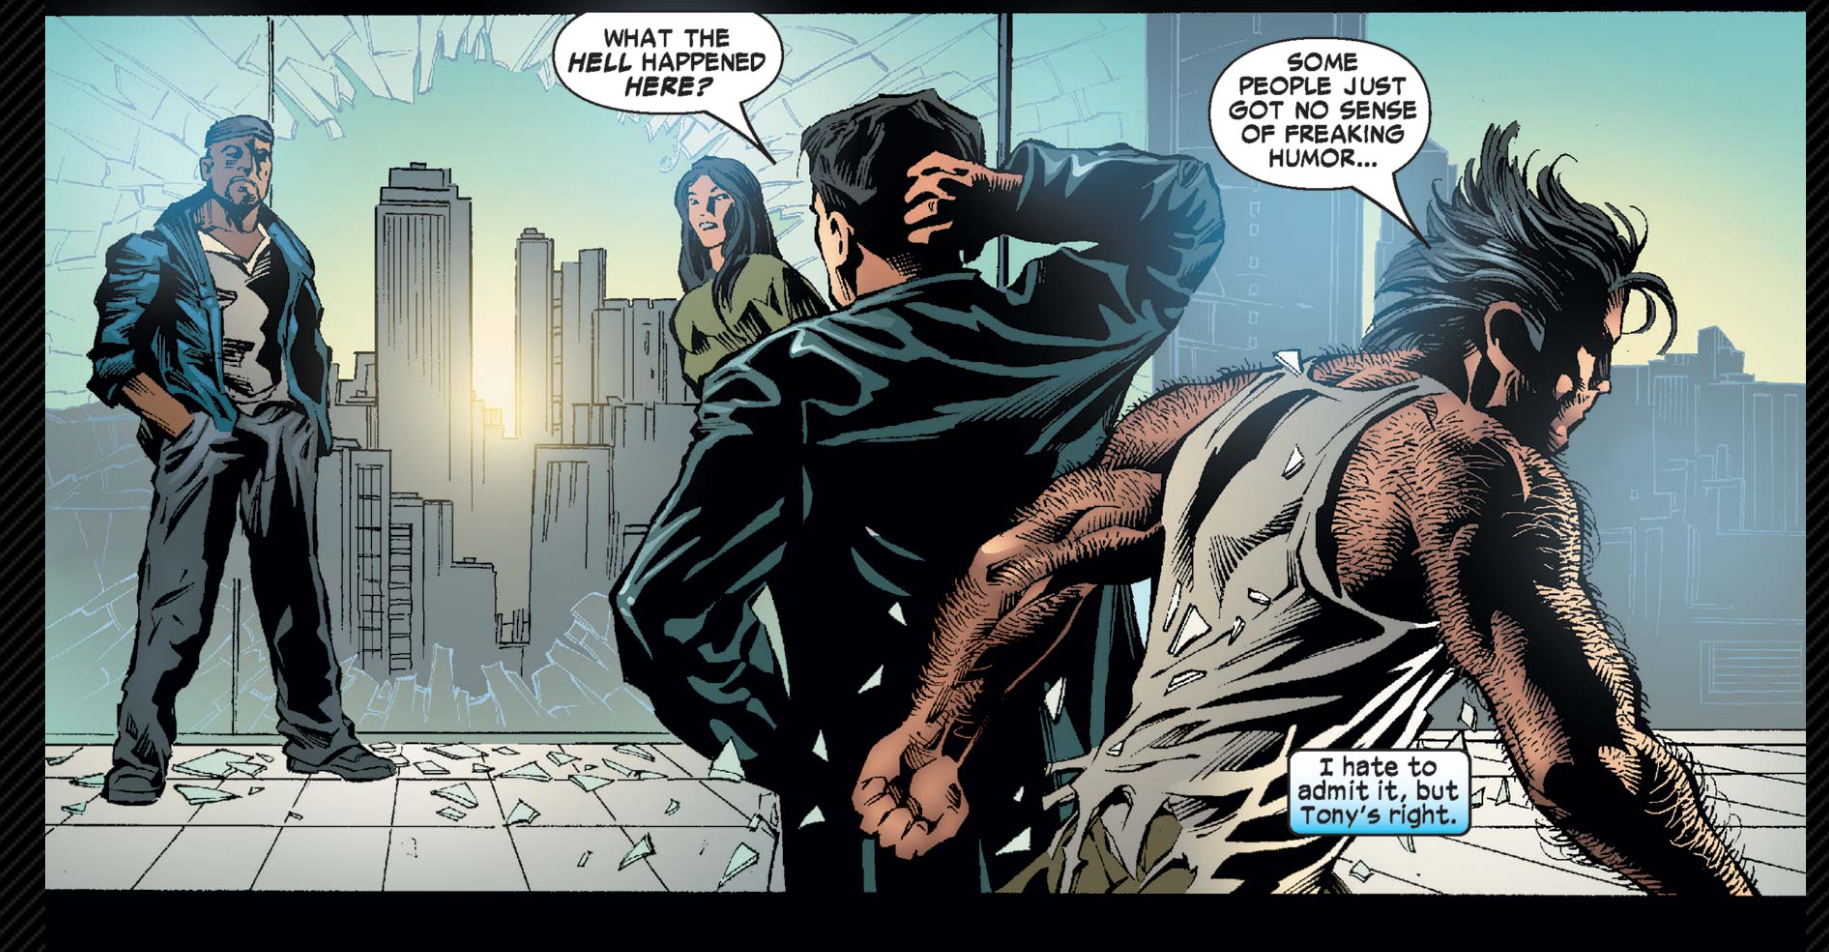 Wolverine diz que “Algumas pessoas simplesmente não têm senso de humor” depois de serem jogados de uma janela supostamente inquebrável pelo Homem-Aranha